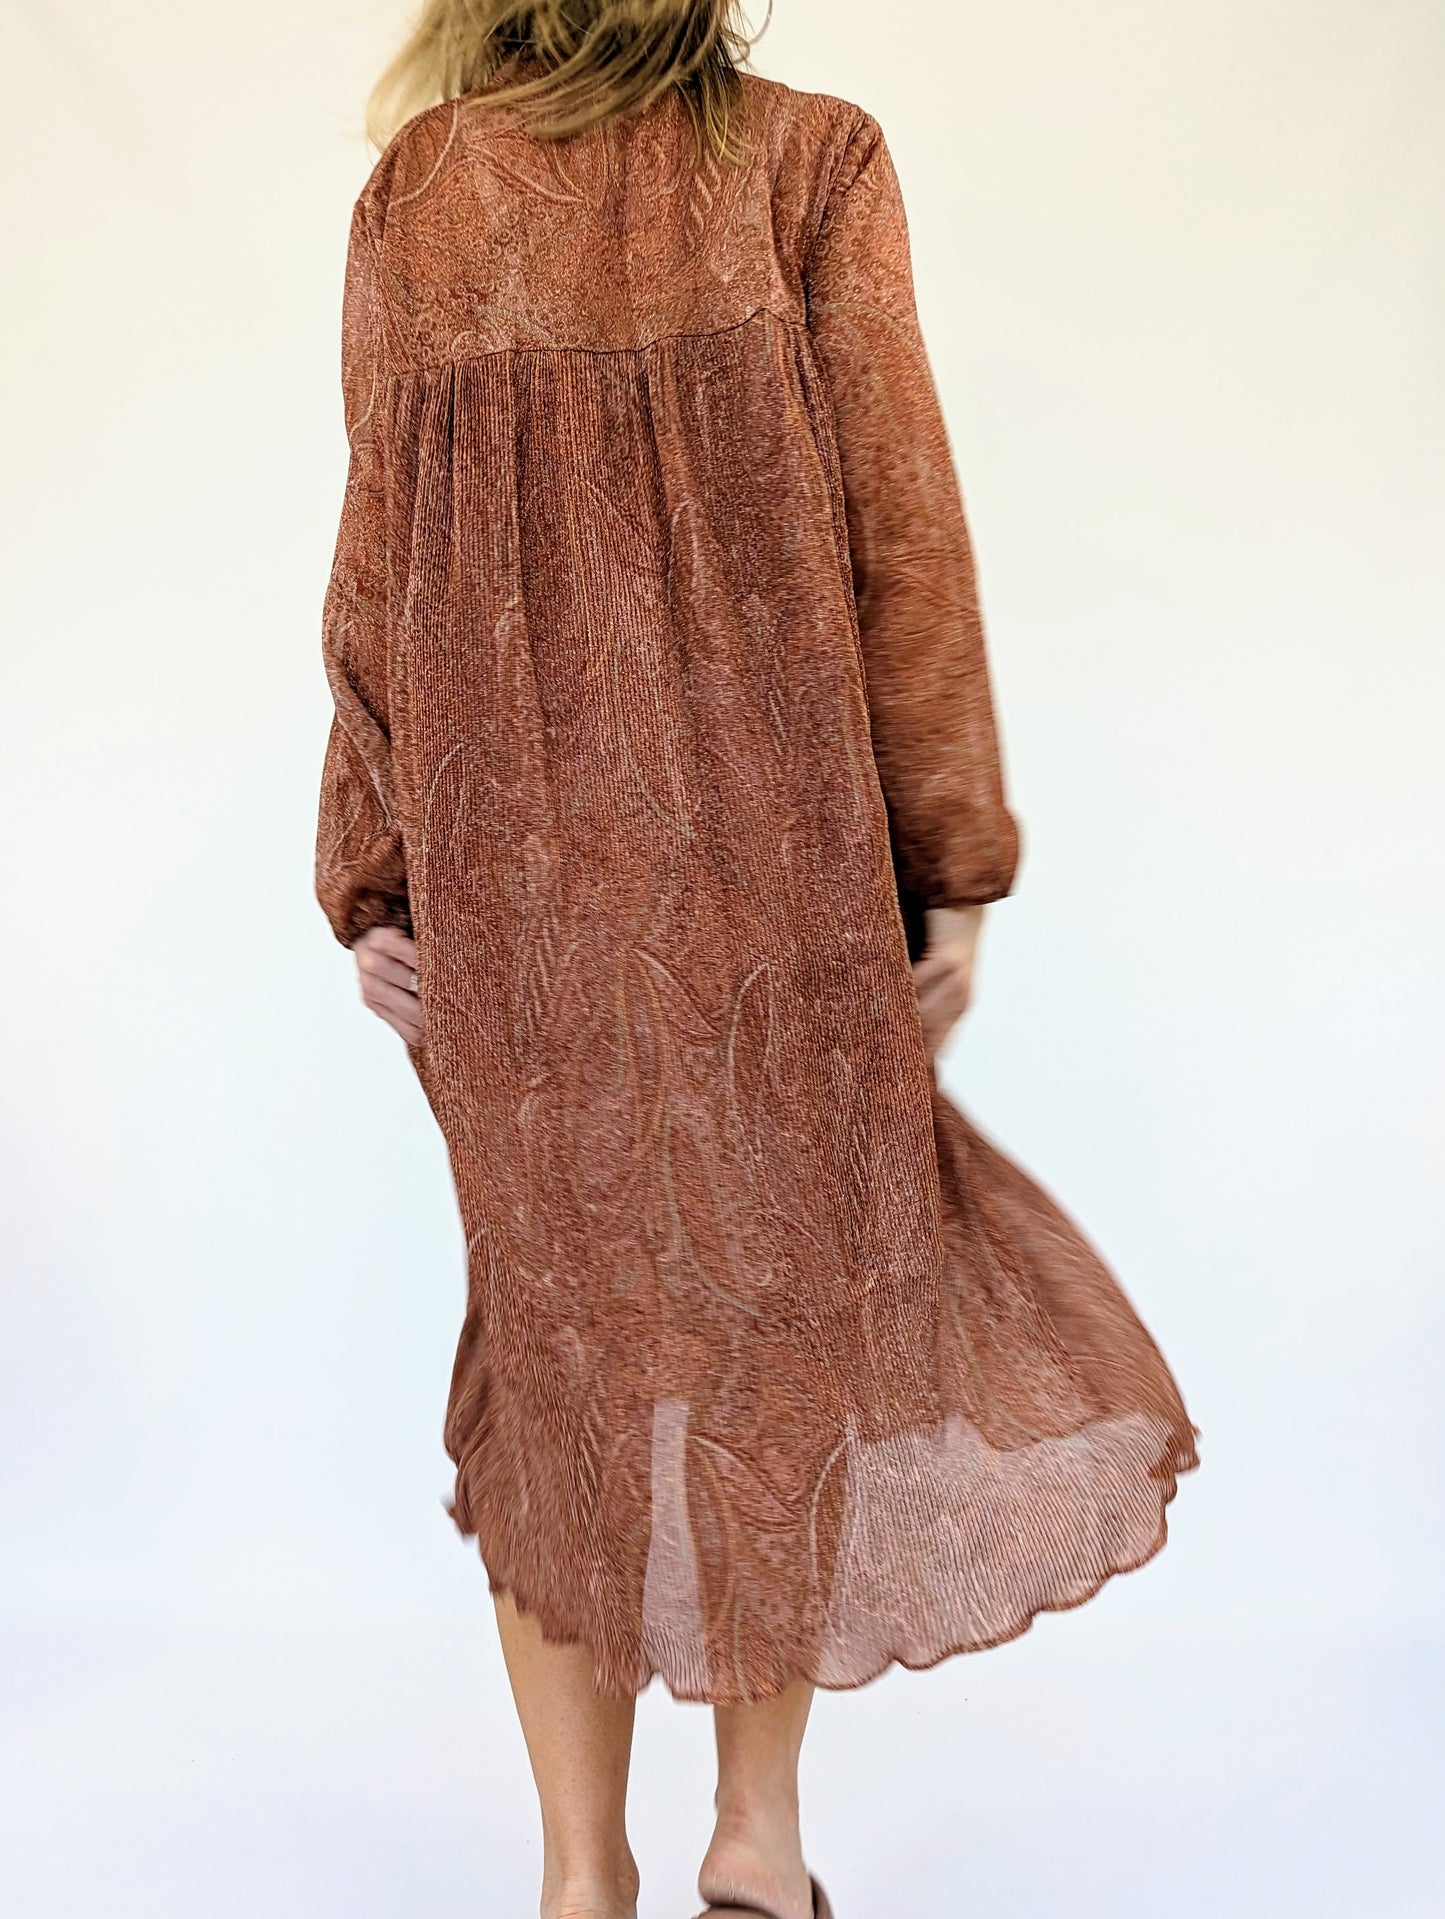 Vintage brown dress